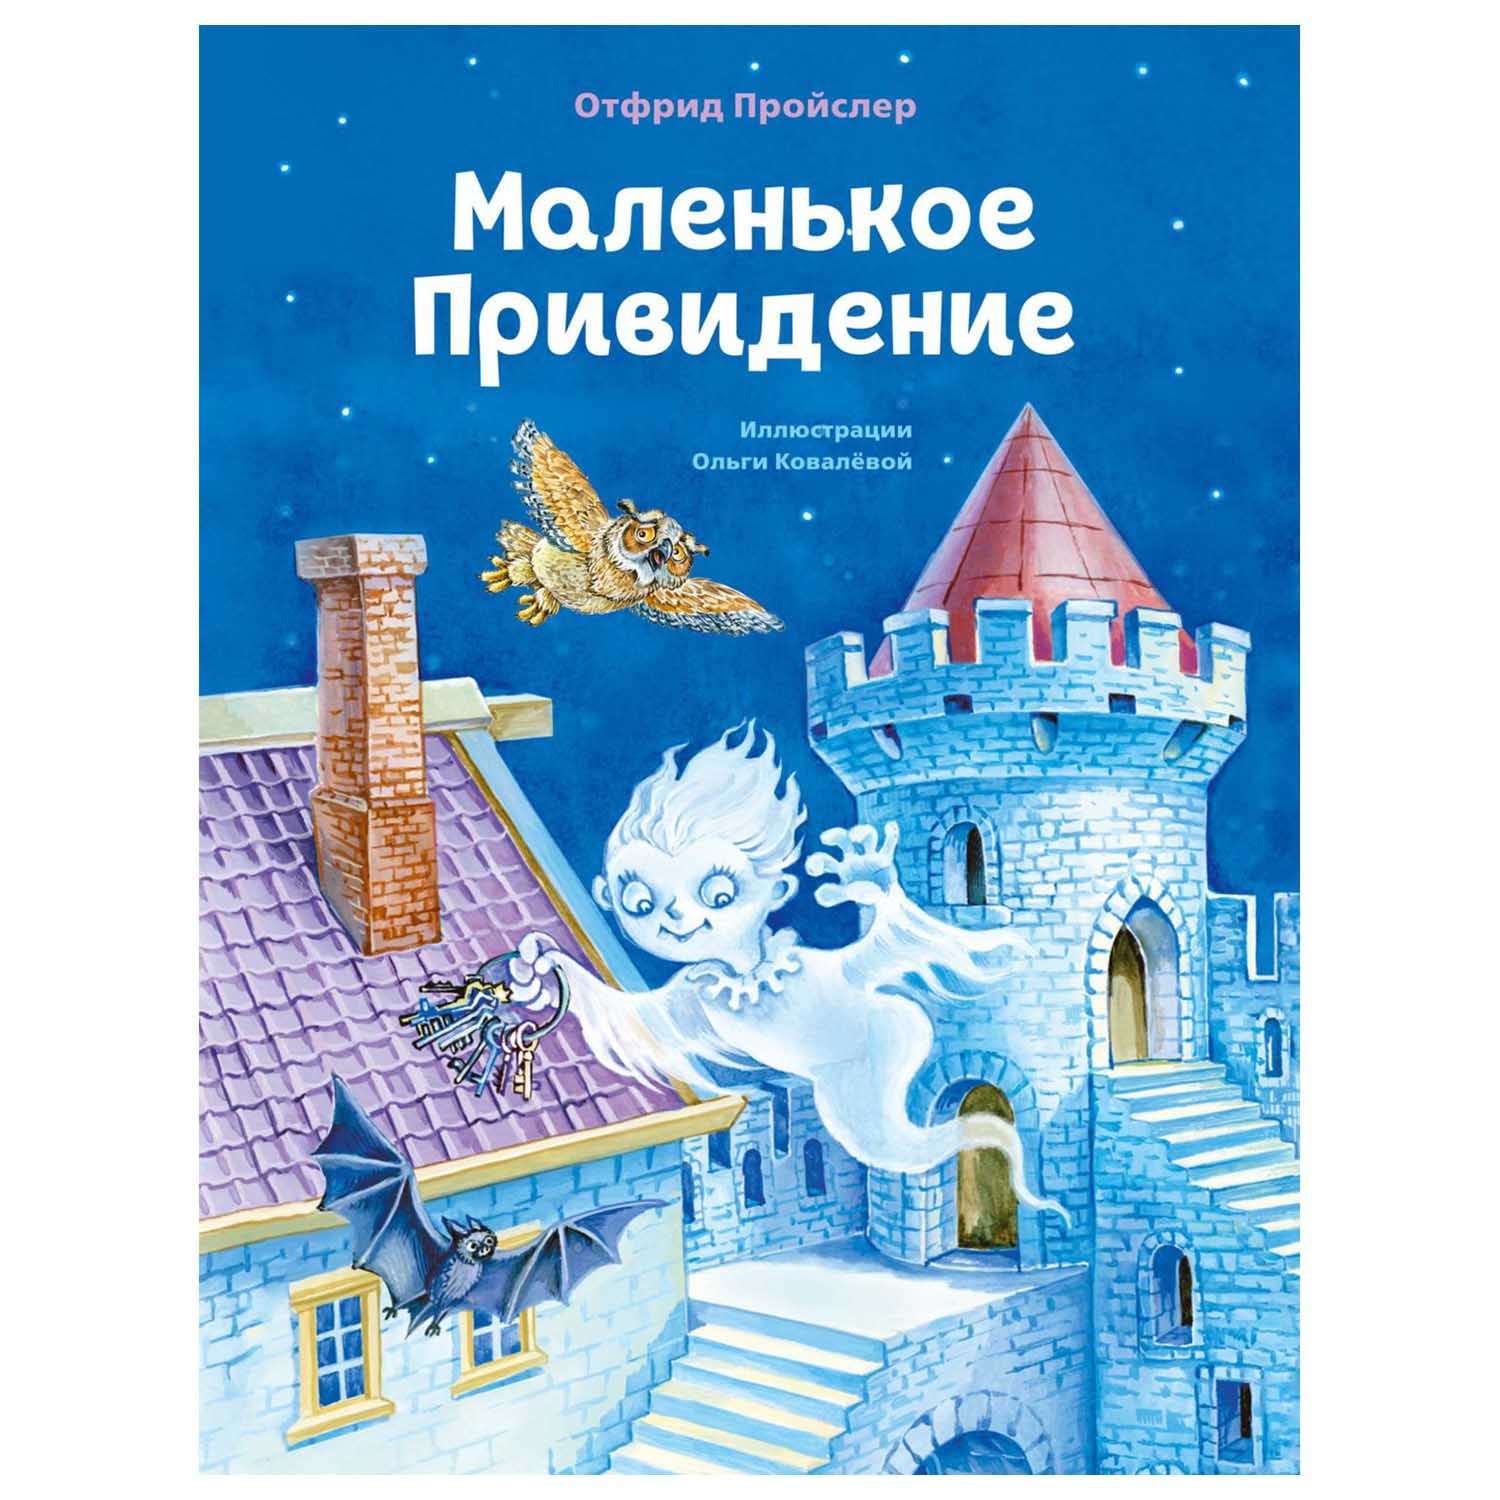 Книга Эксмо Маленькое Привидение иллюстрации Ольги Ковалёвой - фото 1